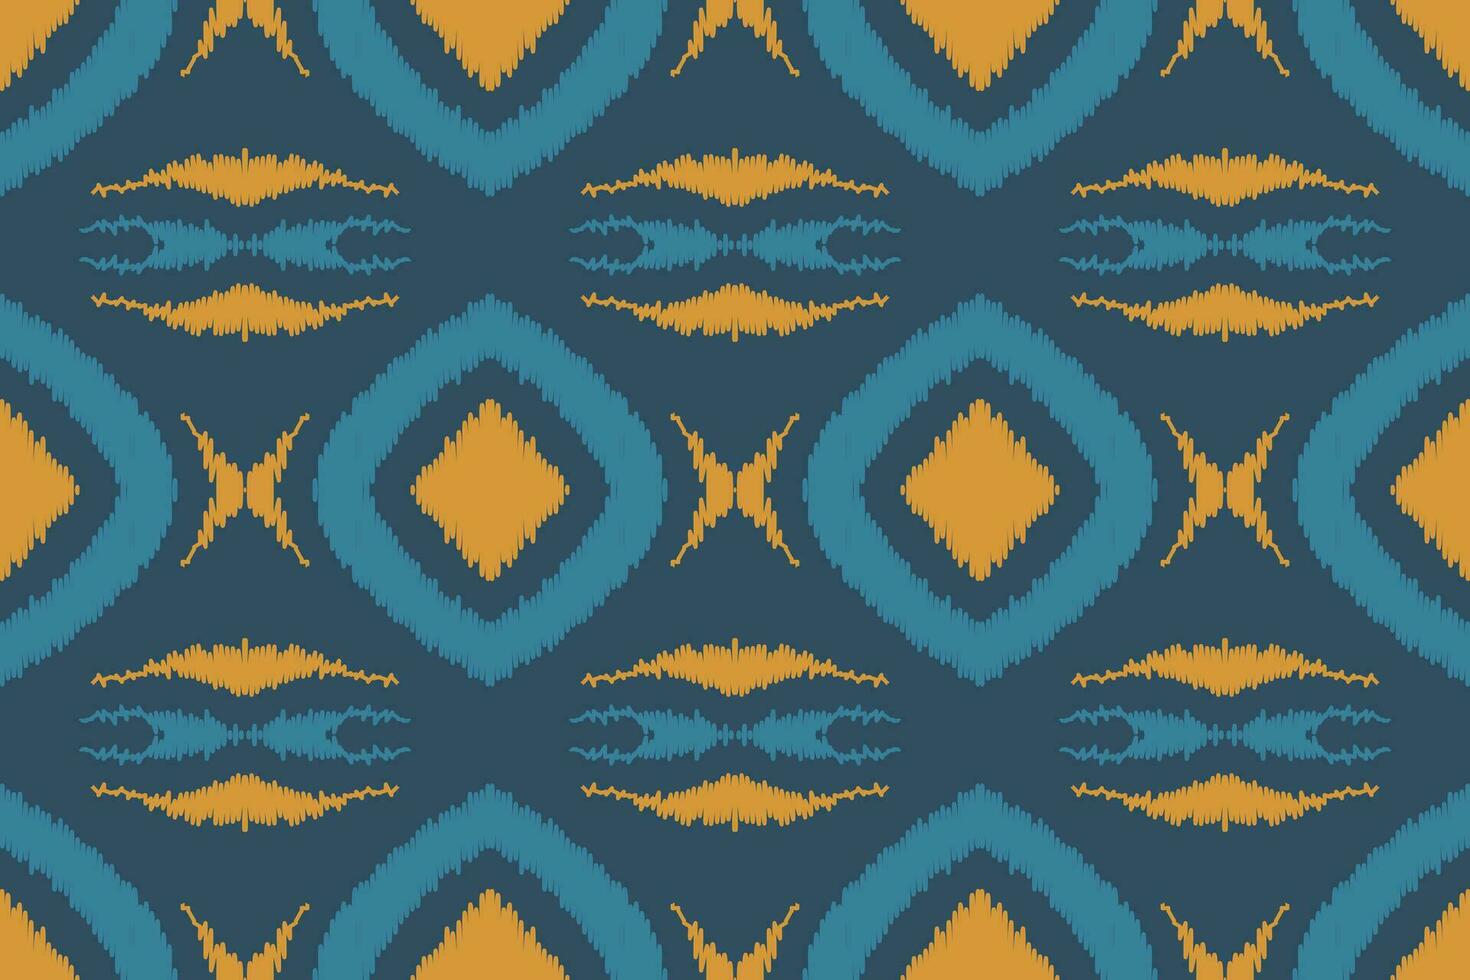 ikat kleding stof paisley borduurwerk achtergrond. ikat driehoek meetkundig etnisch oosters patroon traditioneel.azteken stijl abstract vector illustratie.ontwerp voor textuur, stof, kleding, verpakking, sarong.